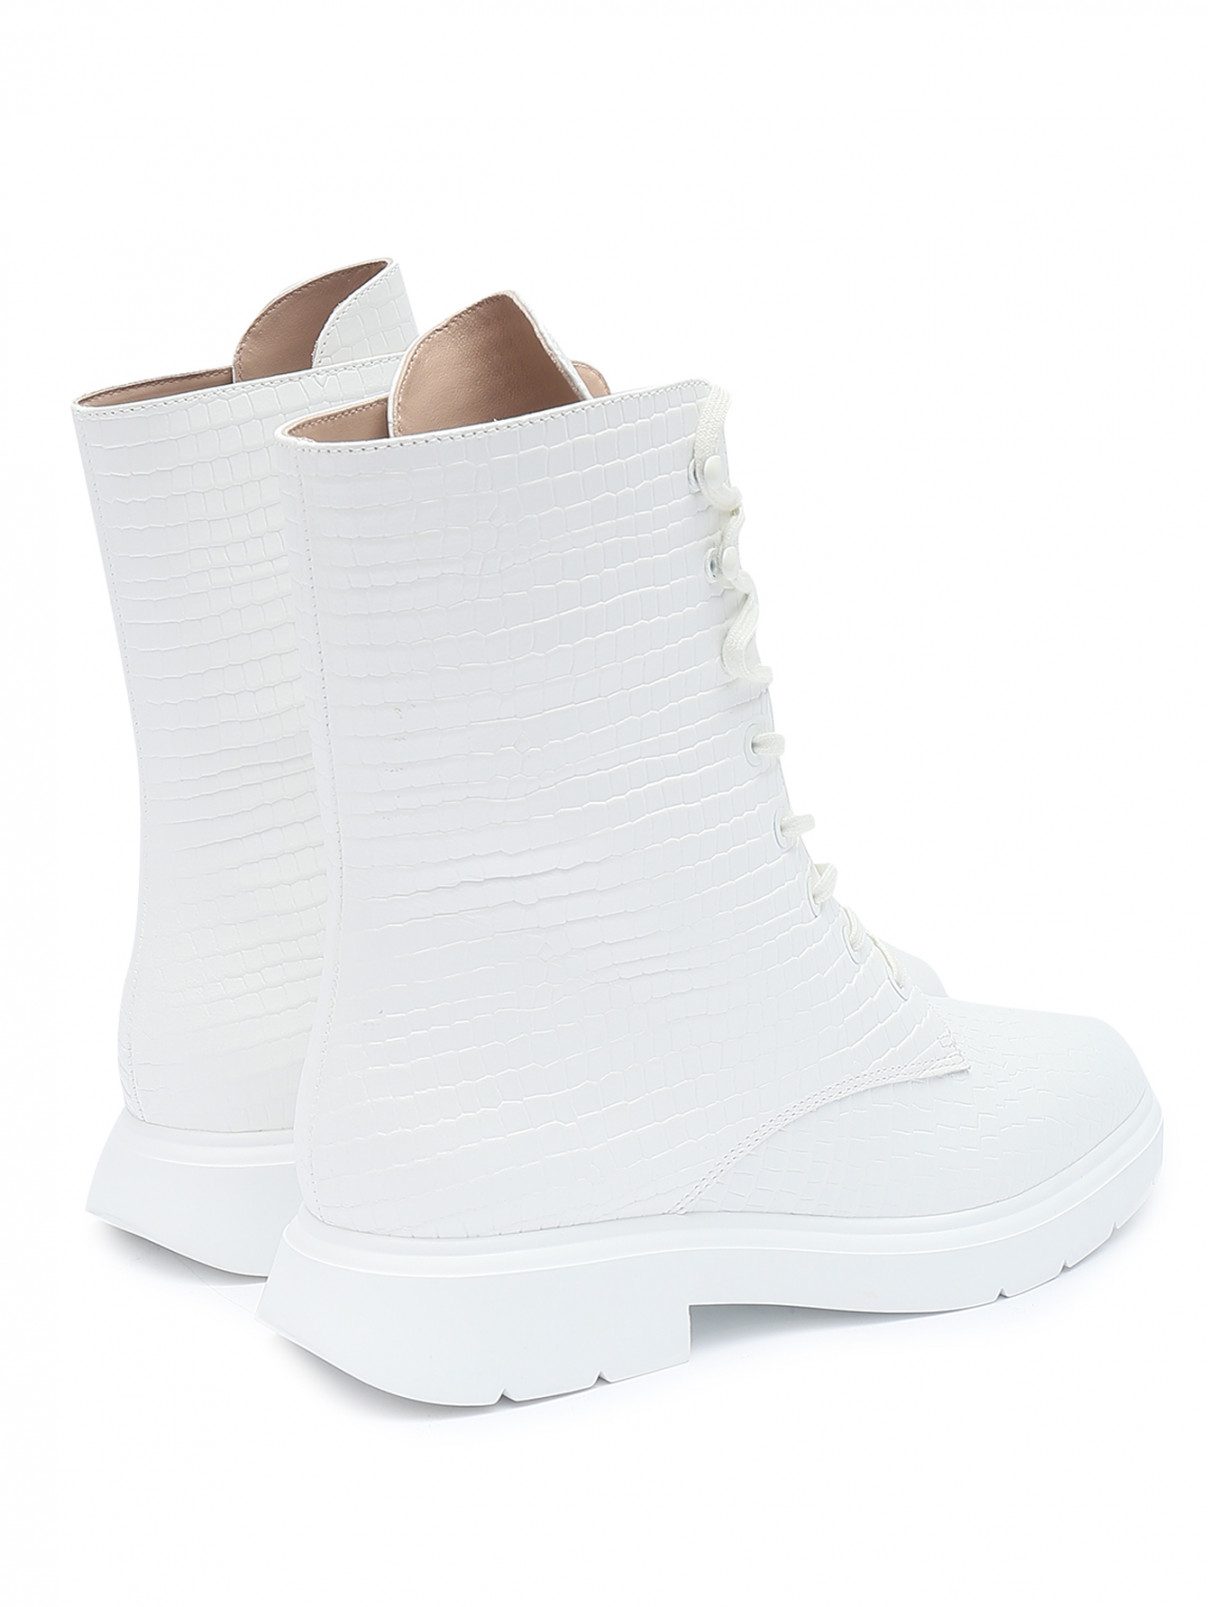 Ботинки из факутрной кожи на шнурках Stuart Weitzman  –  Обтравка2  – Цвет:  Белый